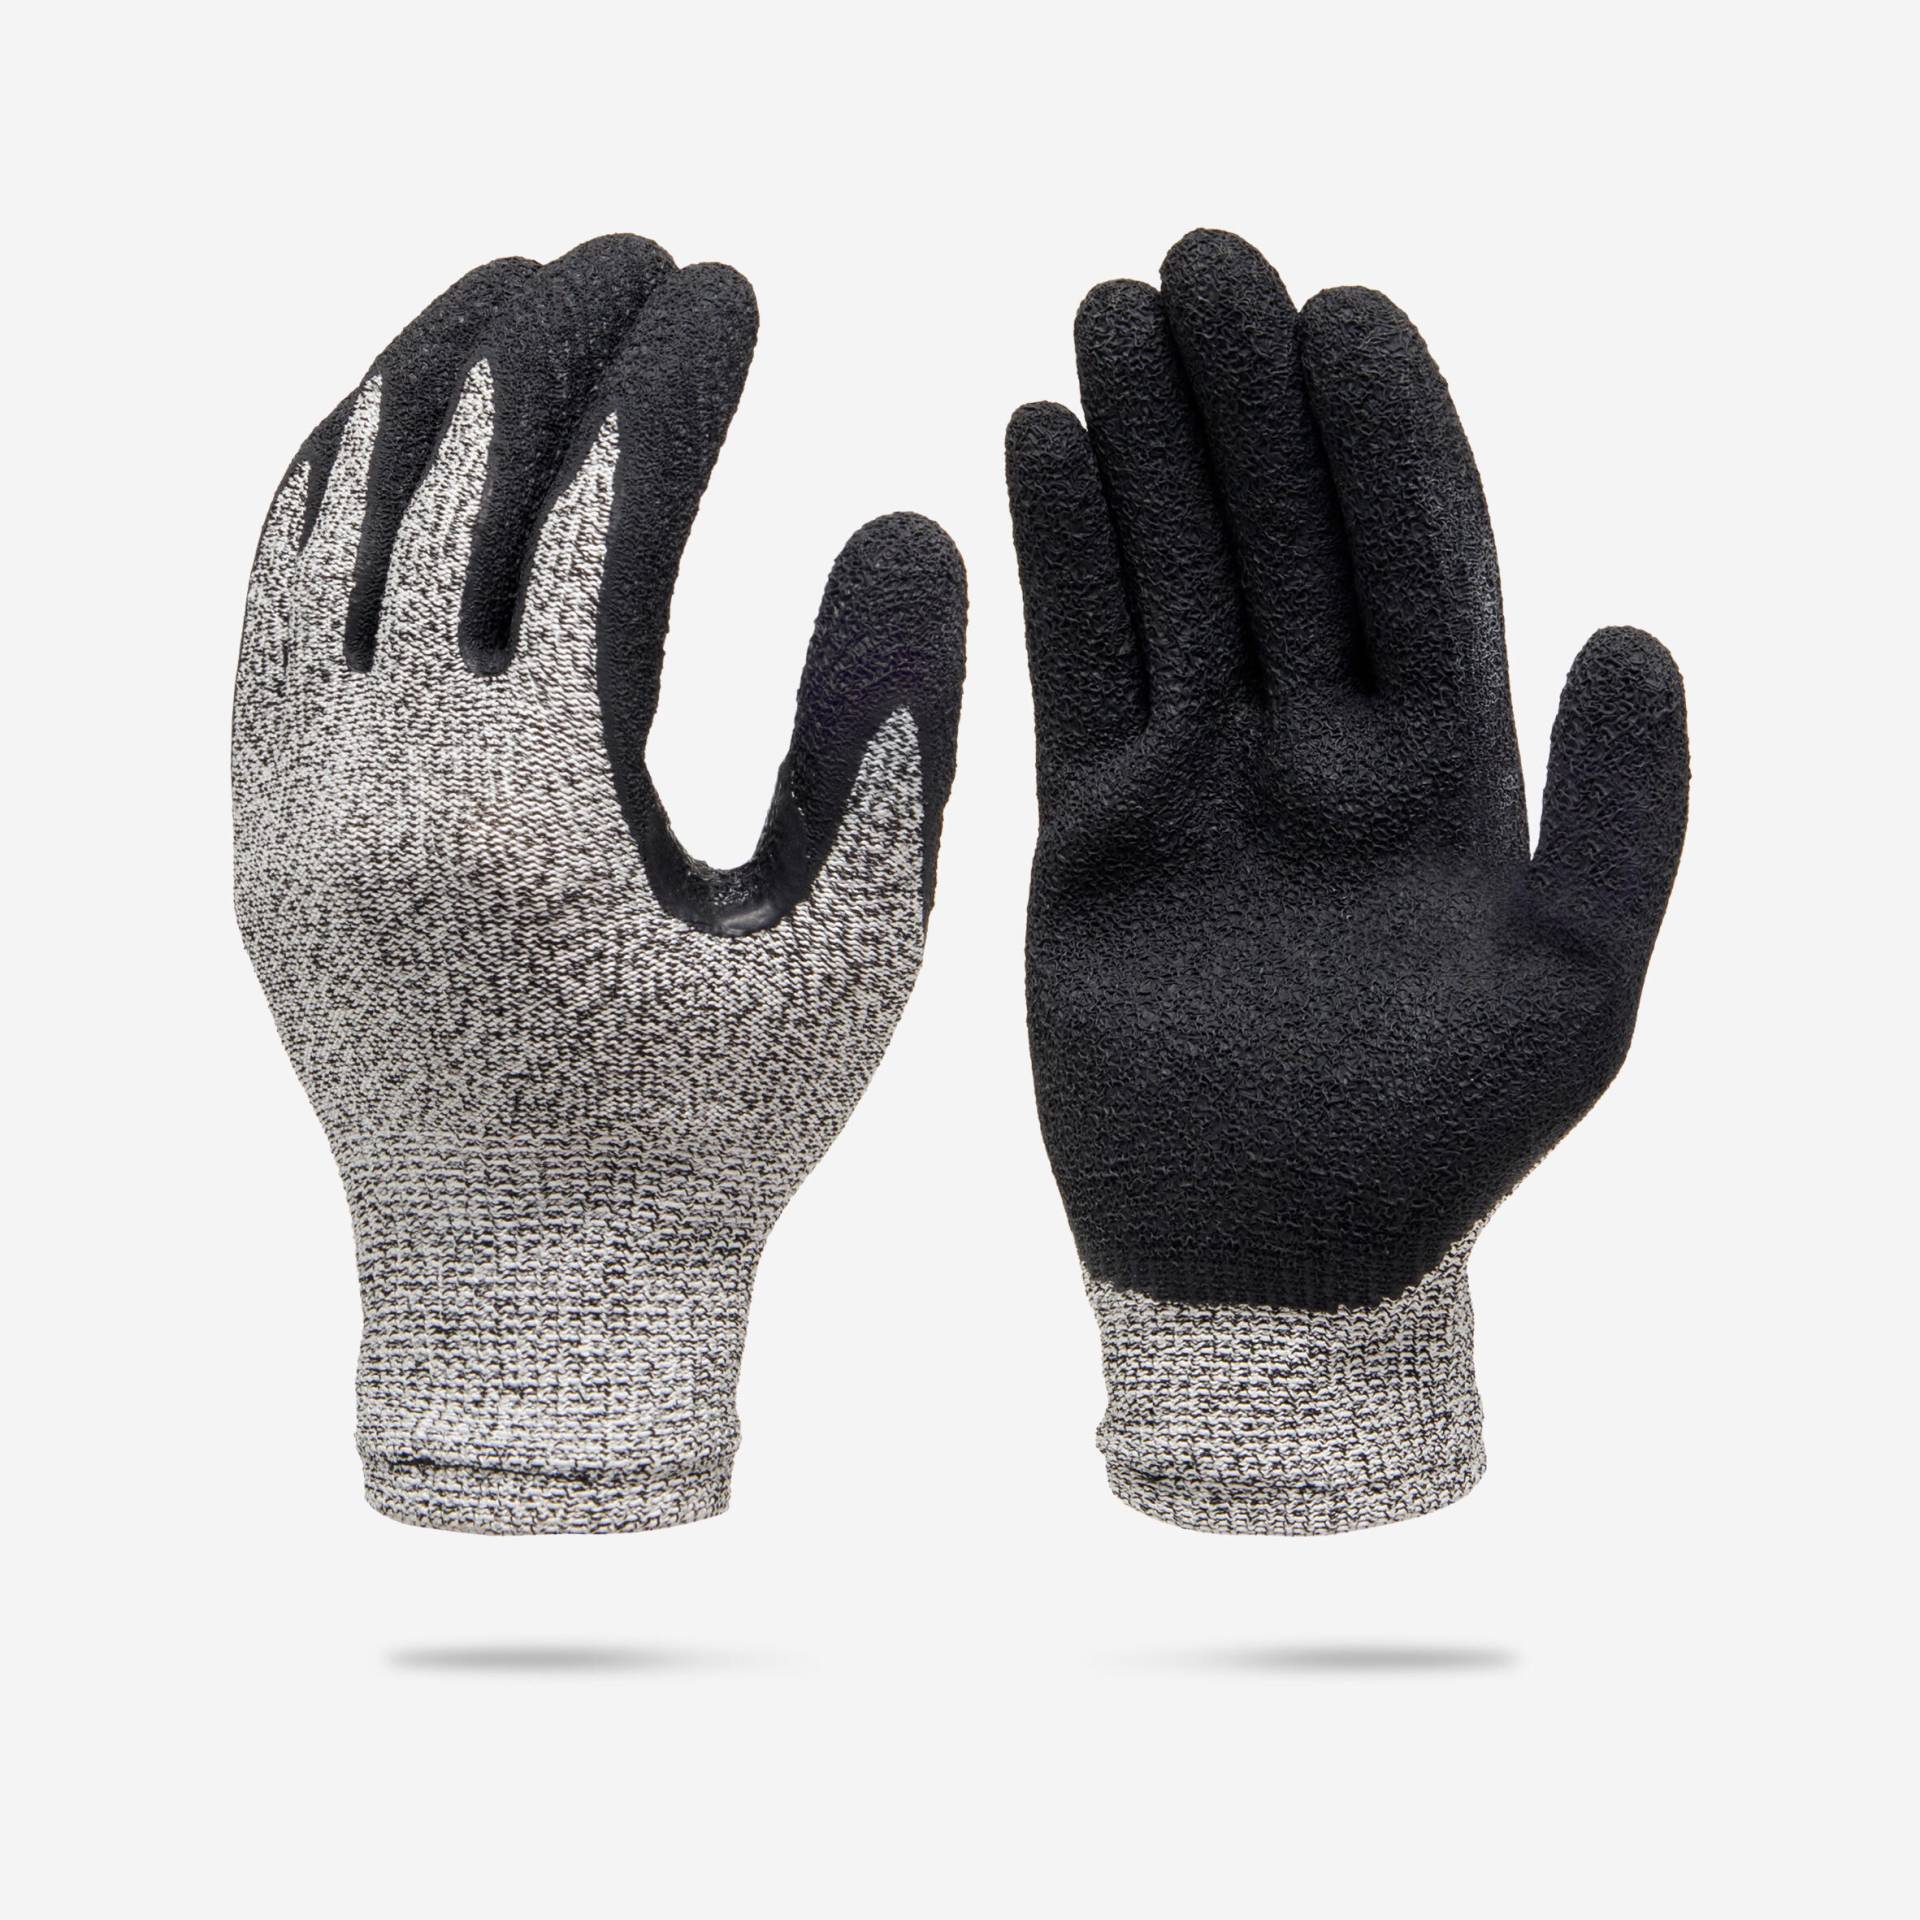 Handschuhe schnittfest aus Gummi-Latex 1 mm Resist SPF von SUBEA